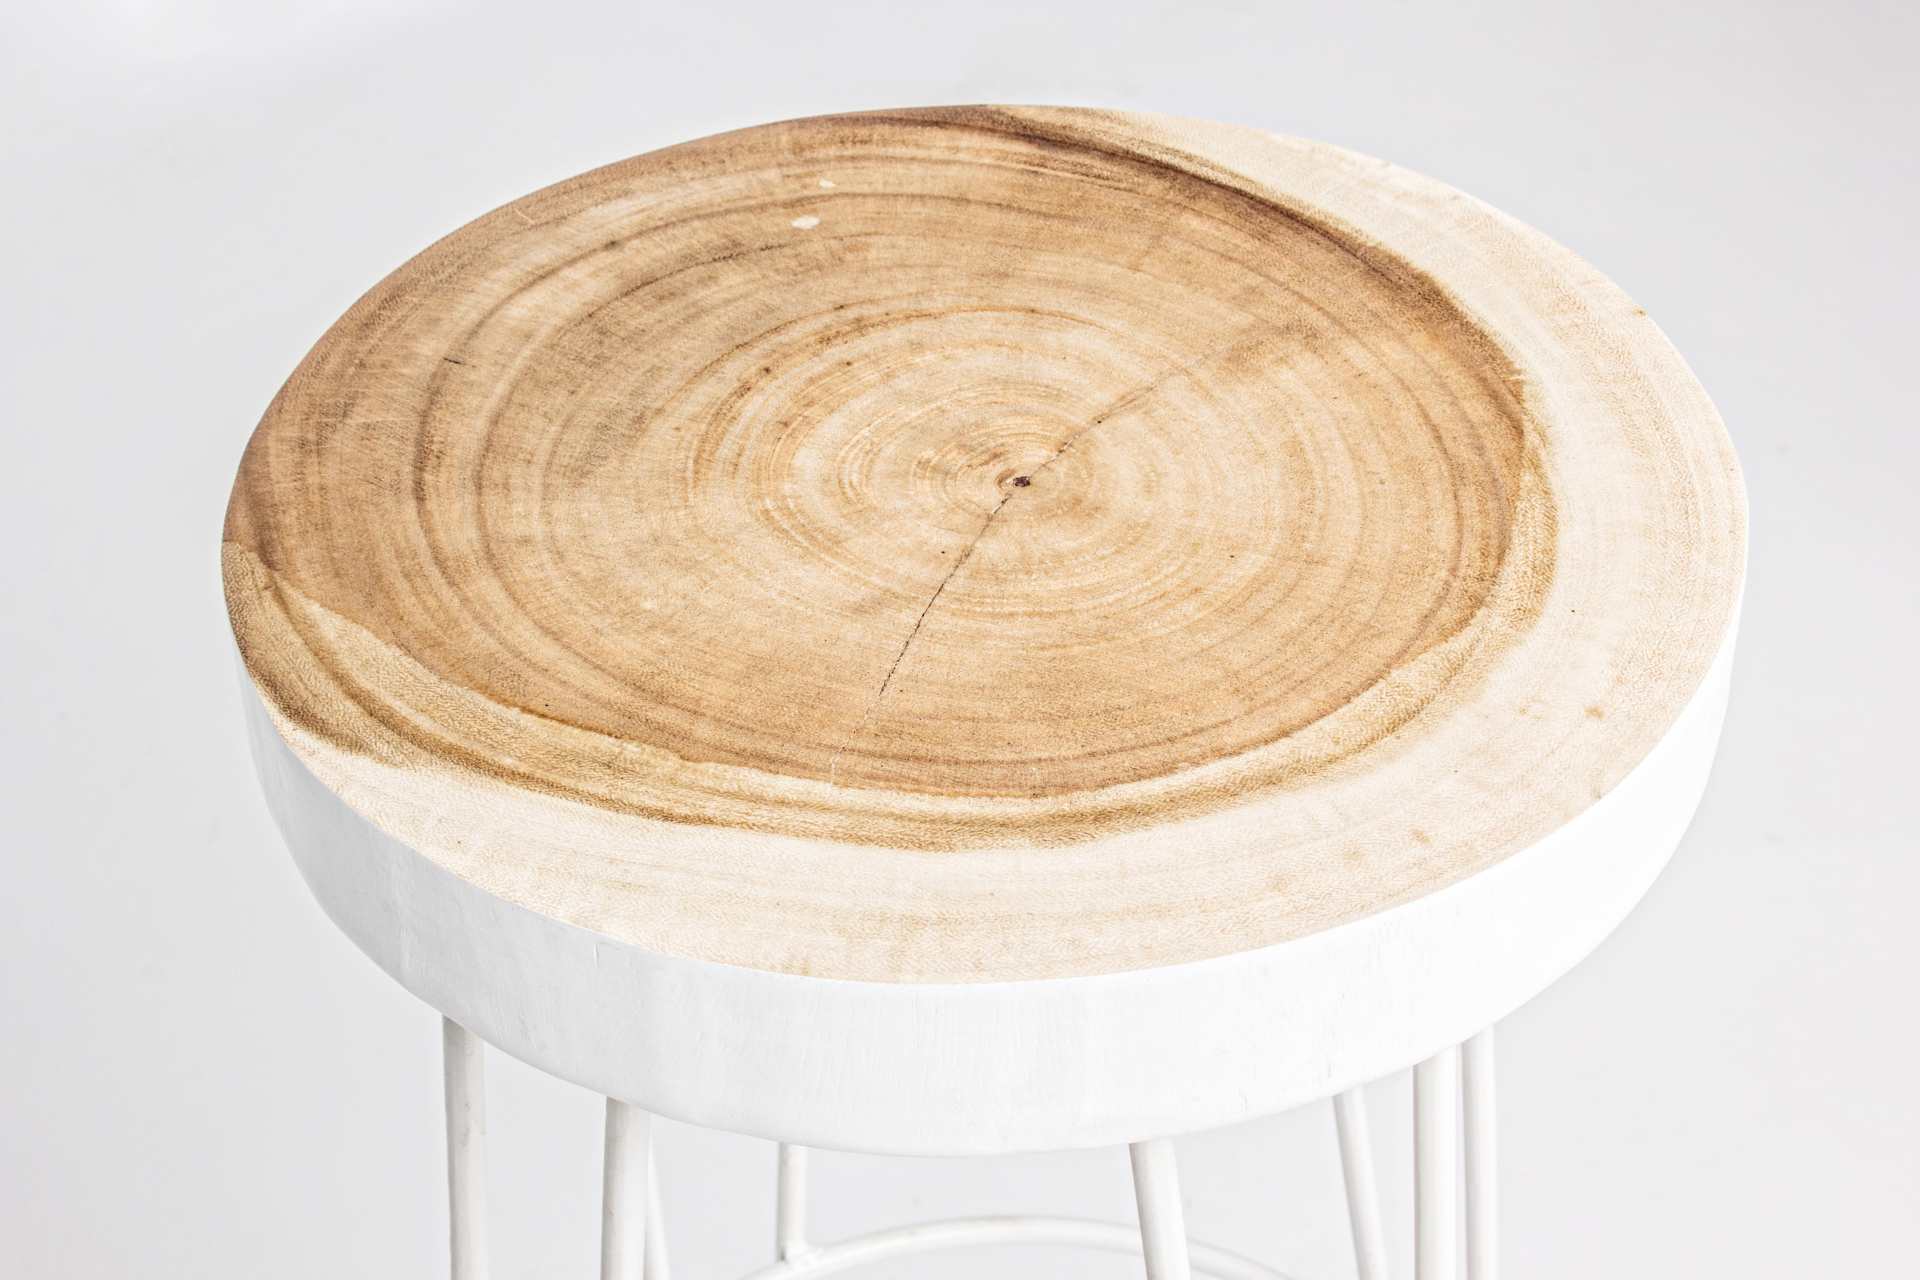 Der Barhocker Rakel überzeugt mit seinem klassischen Design. Gefertigt wurde er aus Mungur Holz, welches einen natürlichen Farbton besitzt. Das Gestell ist aus Metall und hat eine weißen Farbe. Die Sitzhöhe des Hockers beträgt 74 cm.